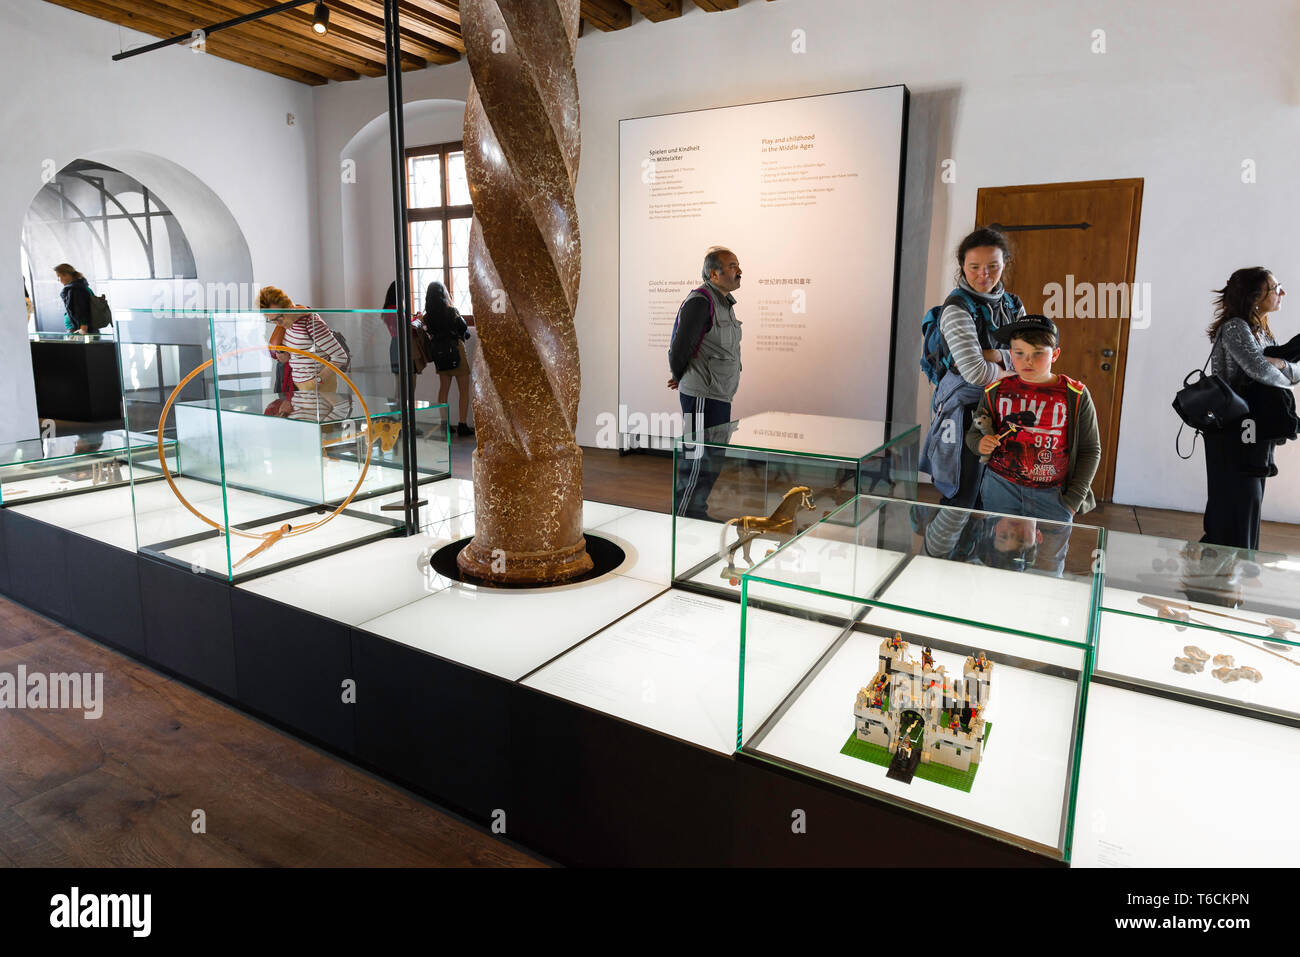 Salisburgo Il Museo del Castello, la vista di persone che guardano presenta all'interno il Museo per Bambini si trova all'interno del castello di Salisburgo, Austria. Foto Stock